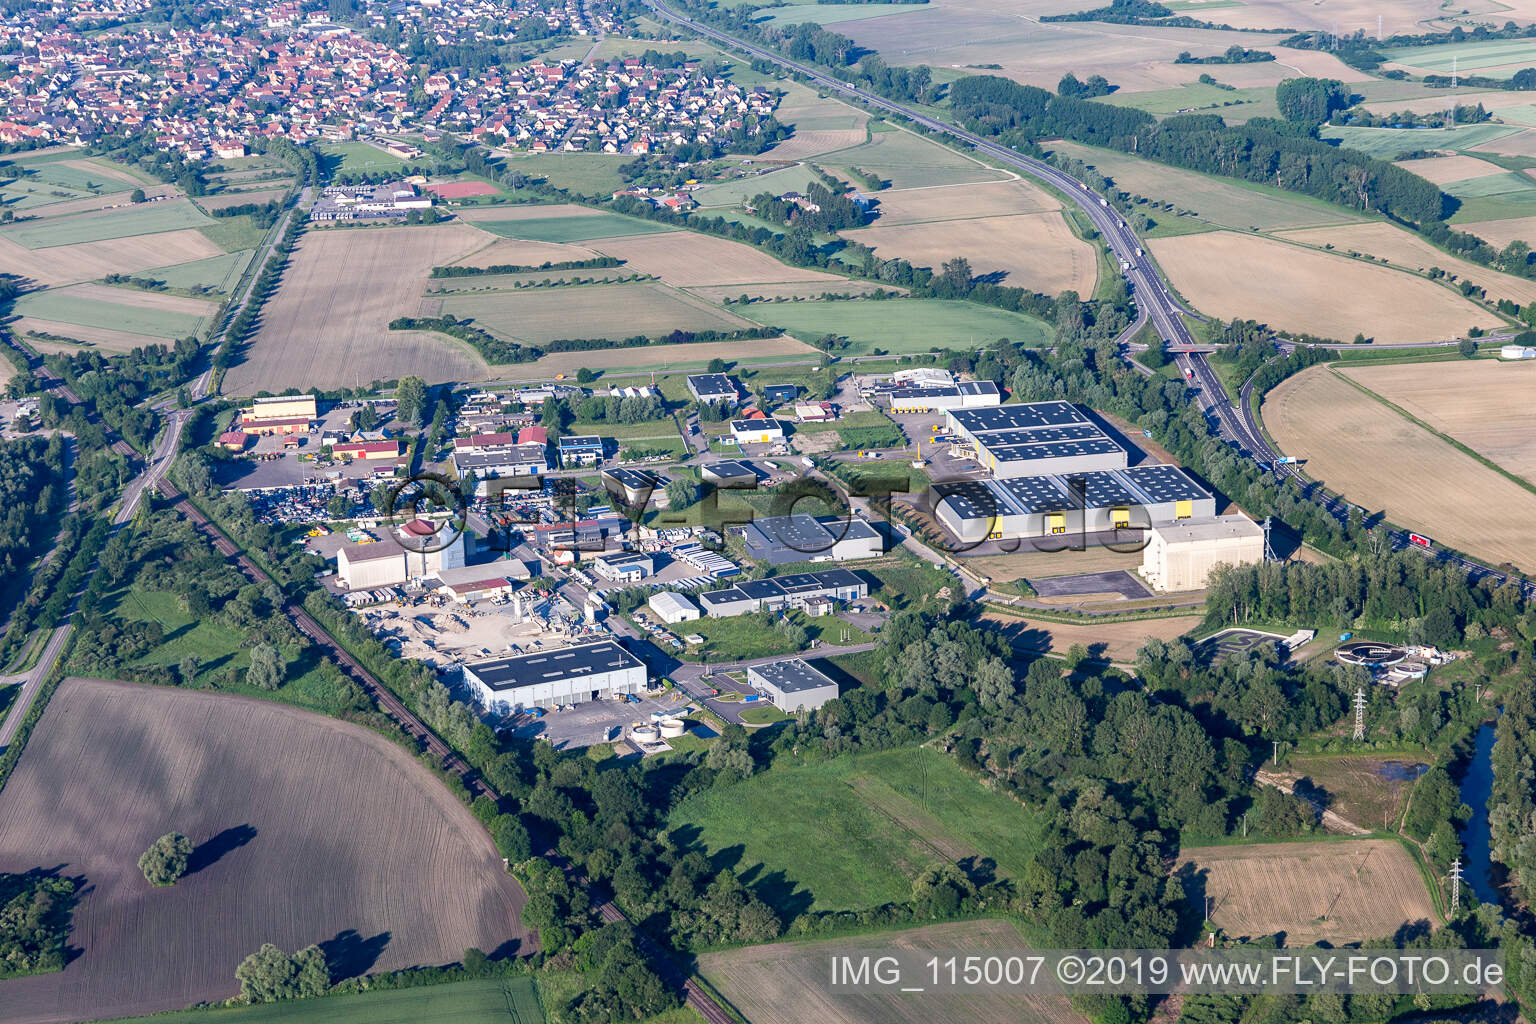 Vue aérienne de Zone industrielle du Ried à Herrlisheim dans le département Bas Rhin, France